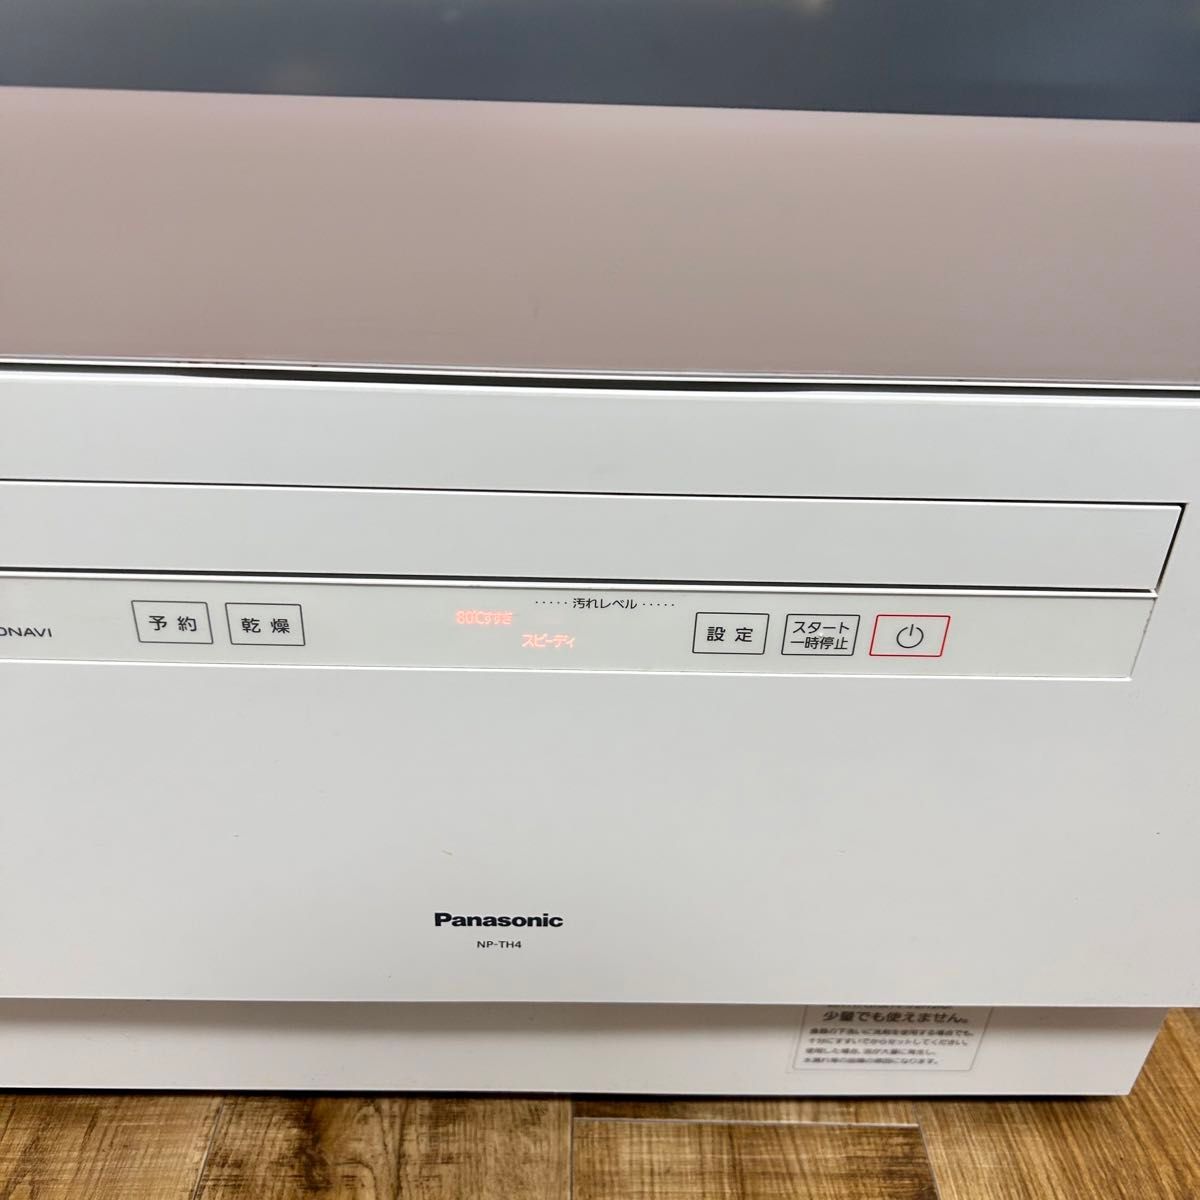 延長保証付き　Panasonic NP-TH4 食器洗い乾燥機  2022年製 パナソニック